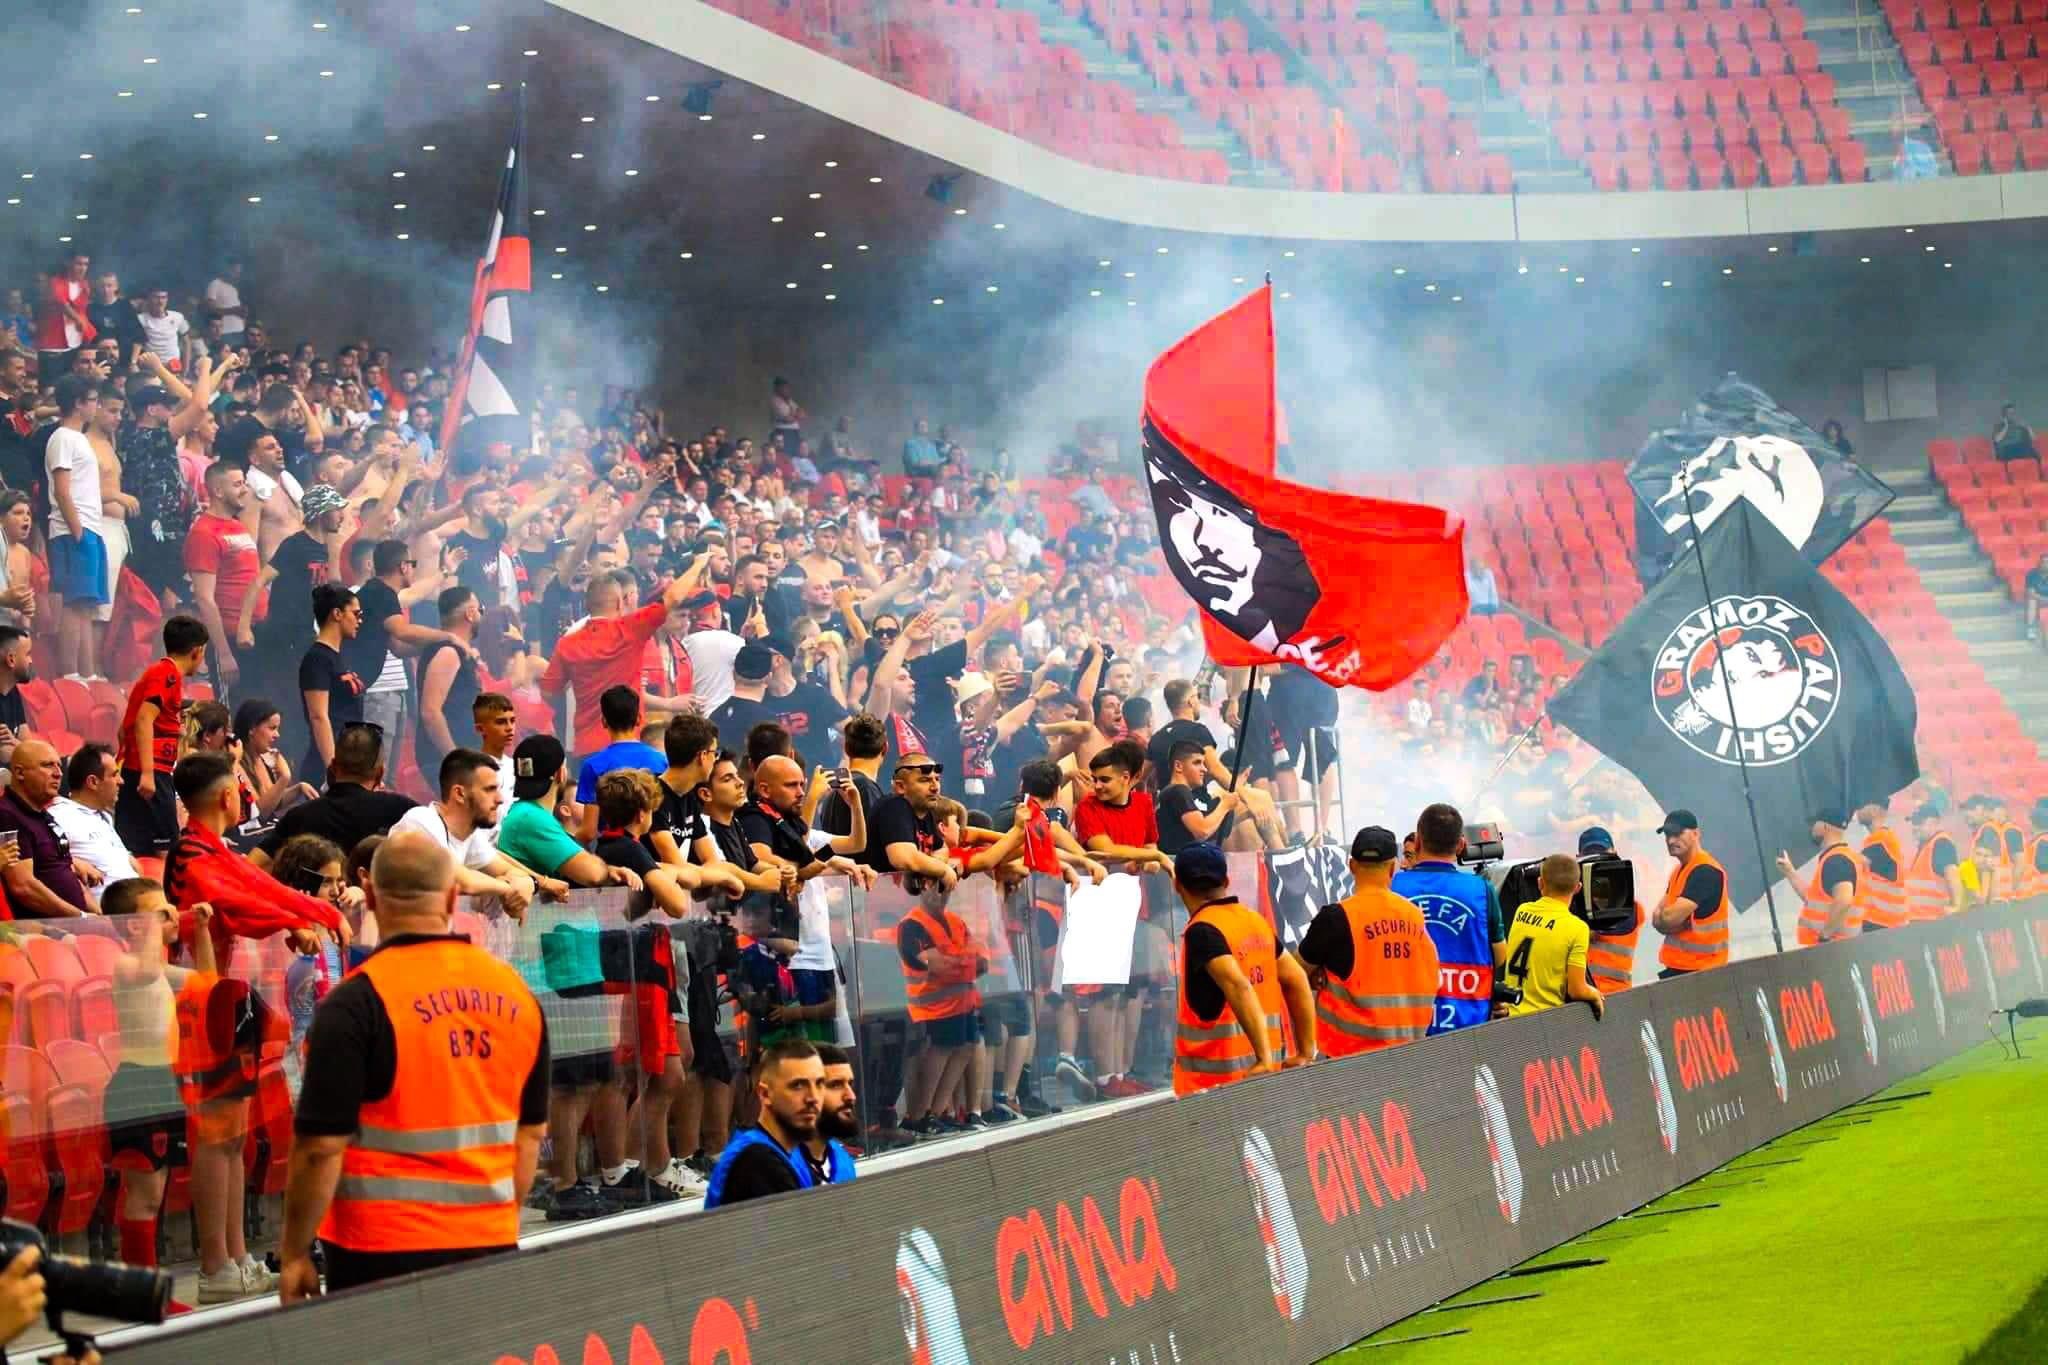 Fanatics of Football on X: KF Tirana at KF Laci #ultras #albania